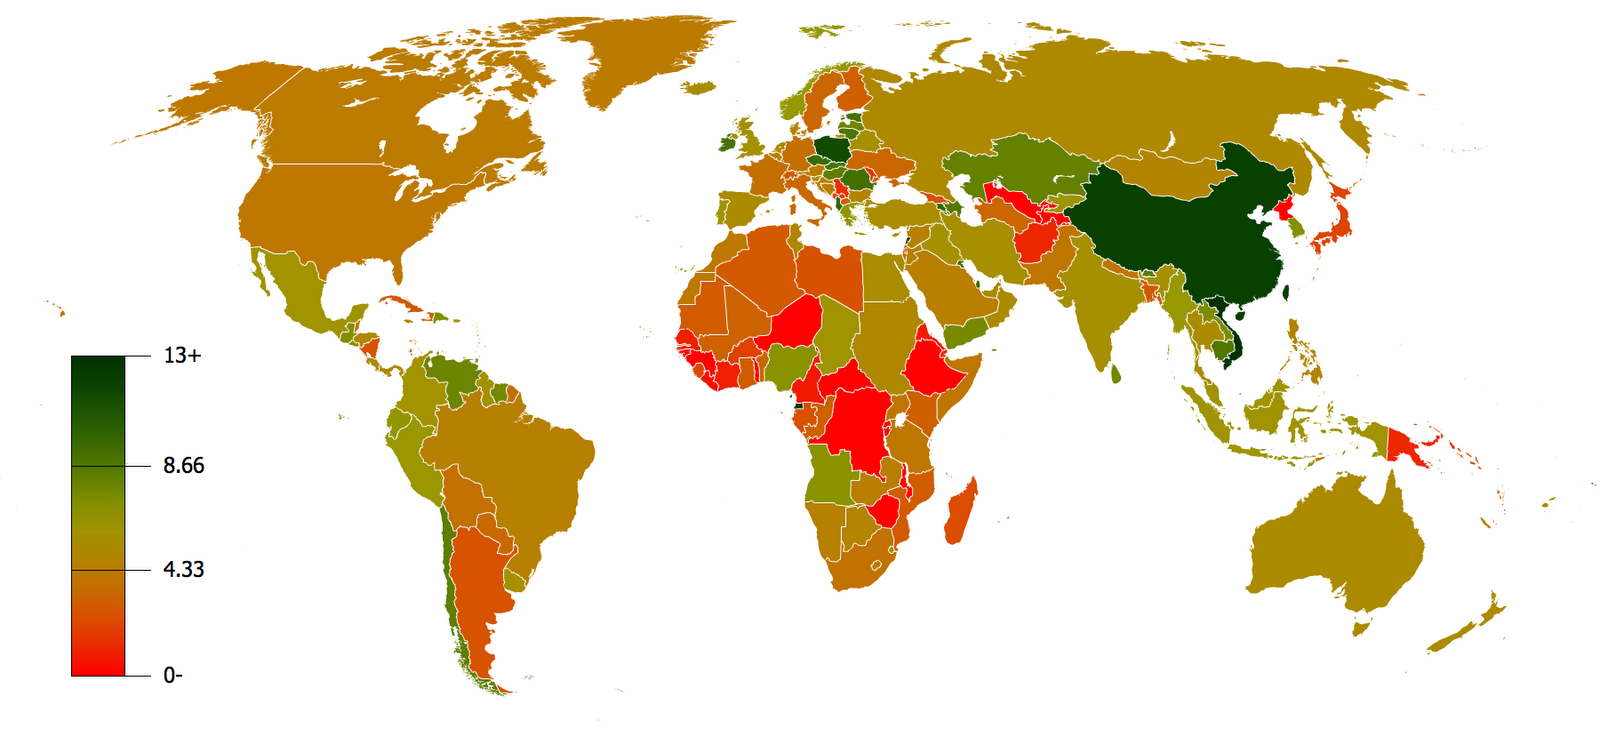 Länder mit dem größten Bruttoinlandsprodukt (BIP) pro Kopf 2015